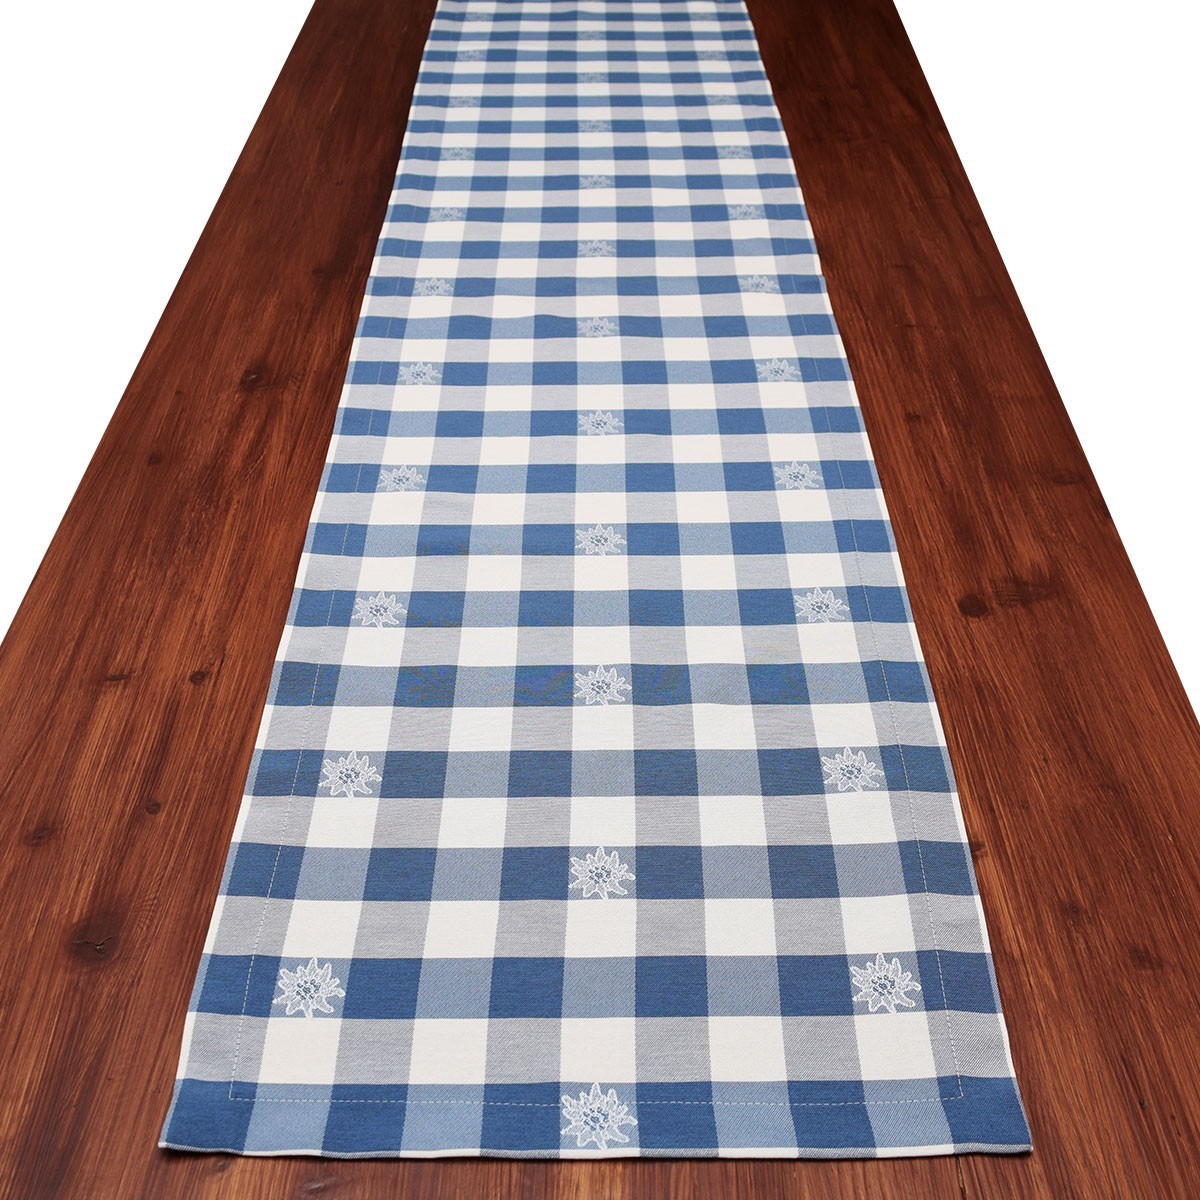 Tischläufer Landhaus-Tischdecke Karo mit Edelweiß in Blau 40 x 160 cm blau-weiß kariert